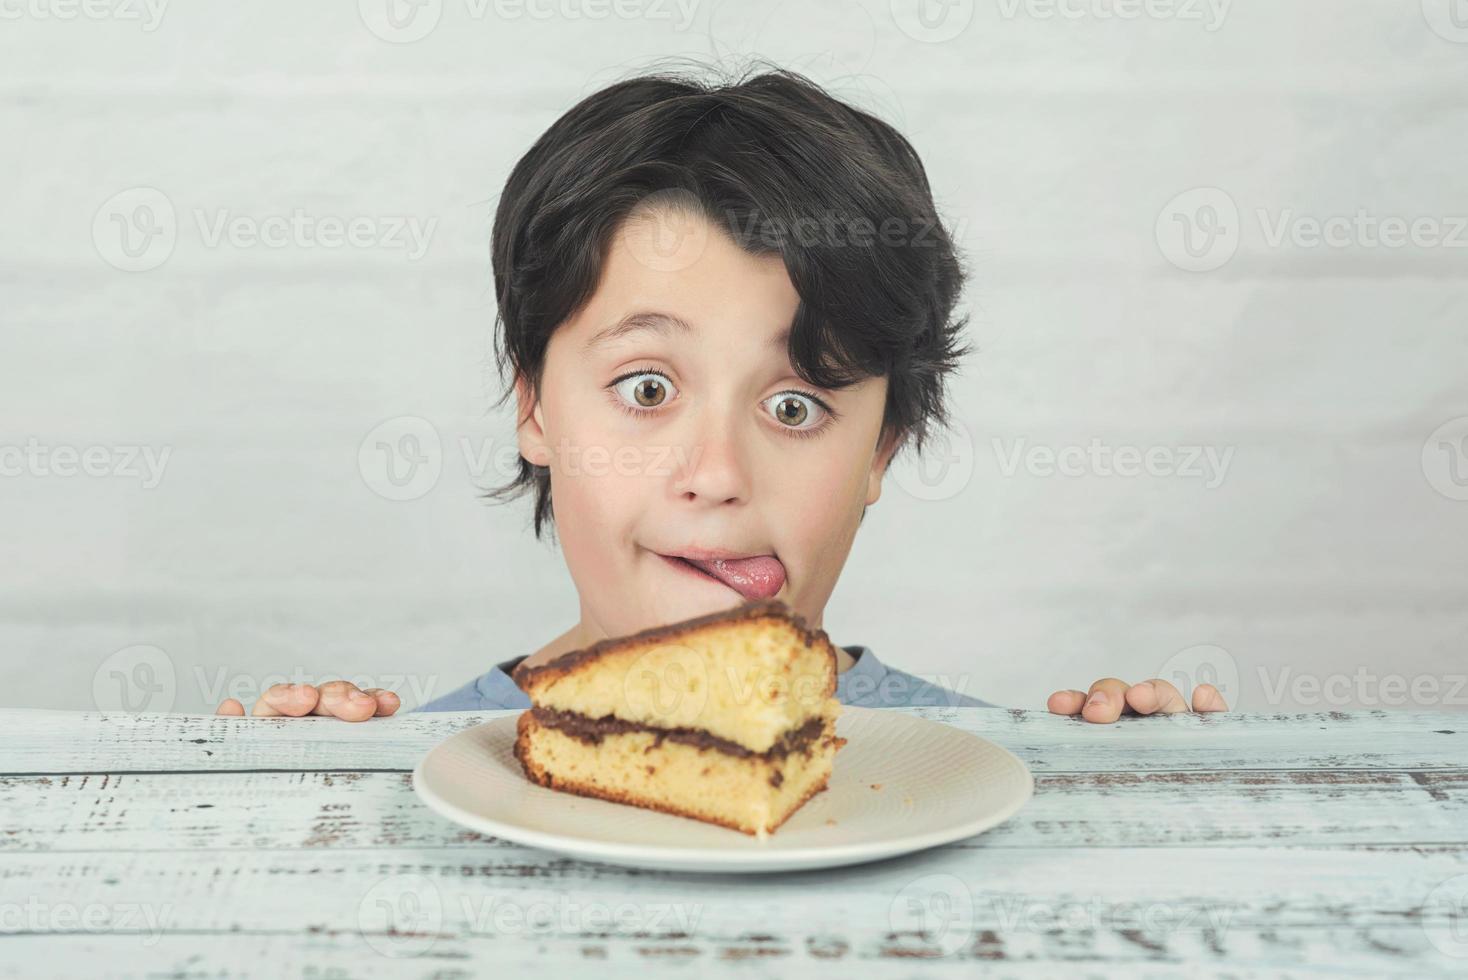 hongerig kind dat een fluitje van een cent eet foto